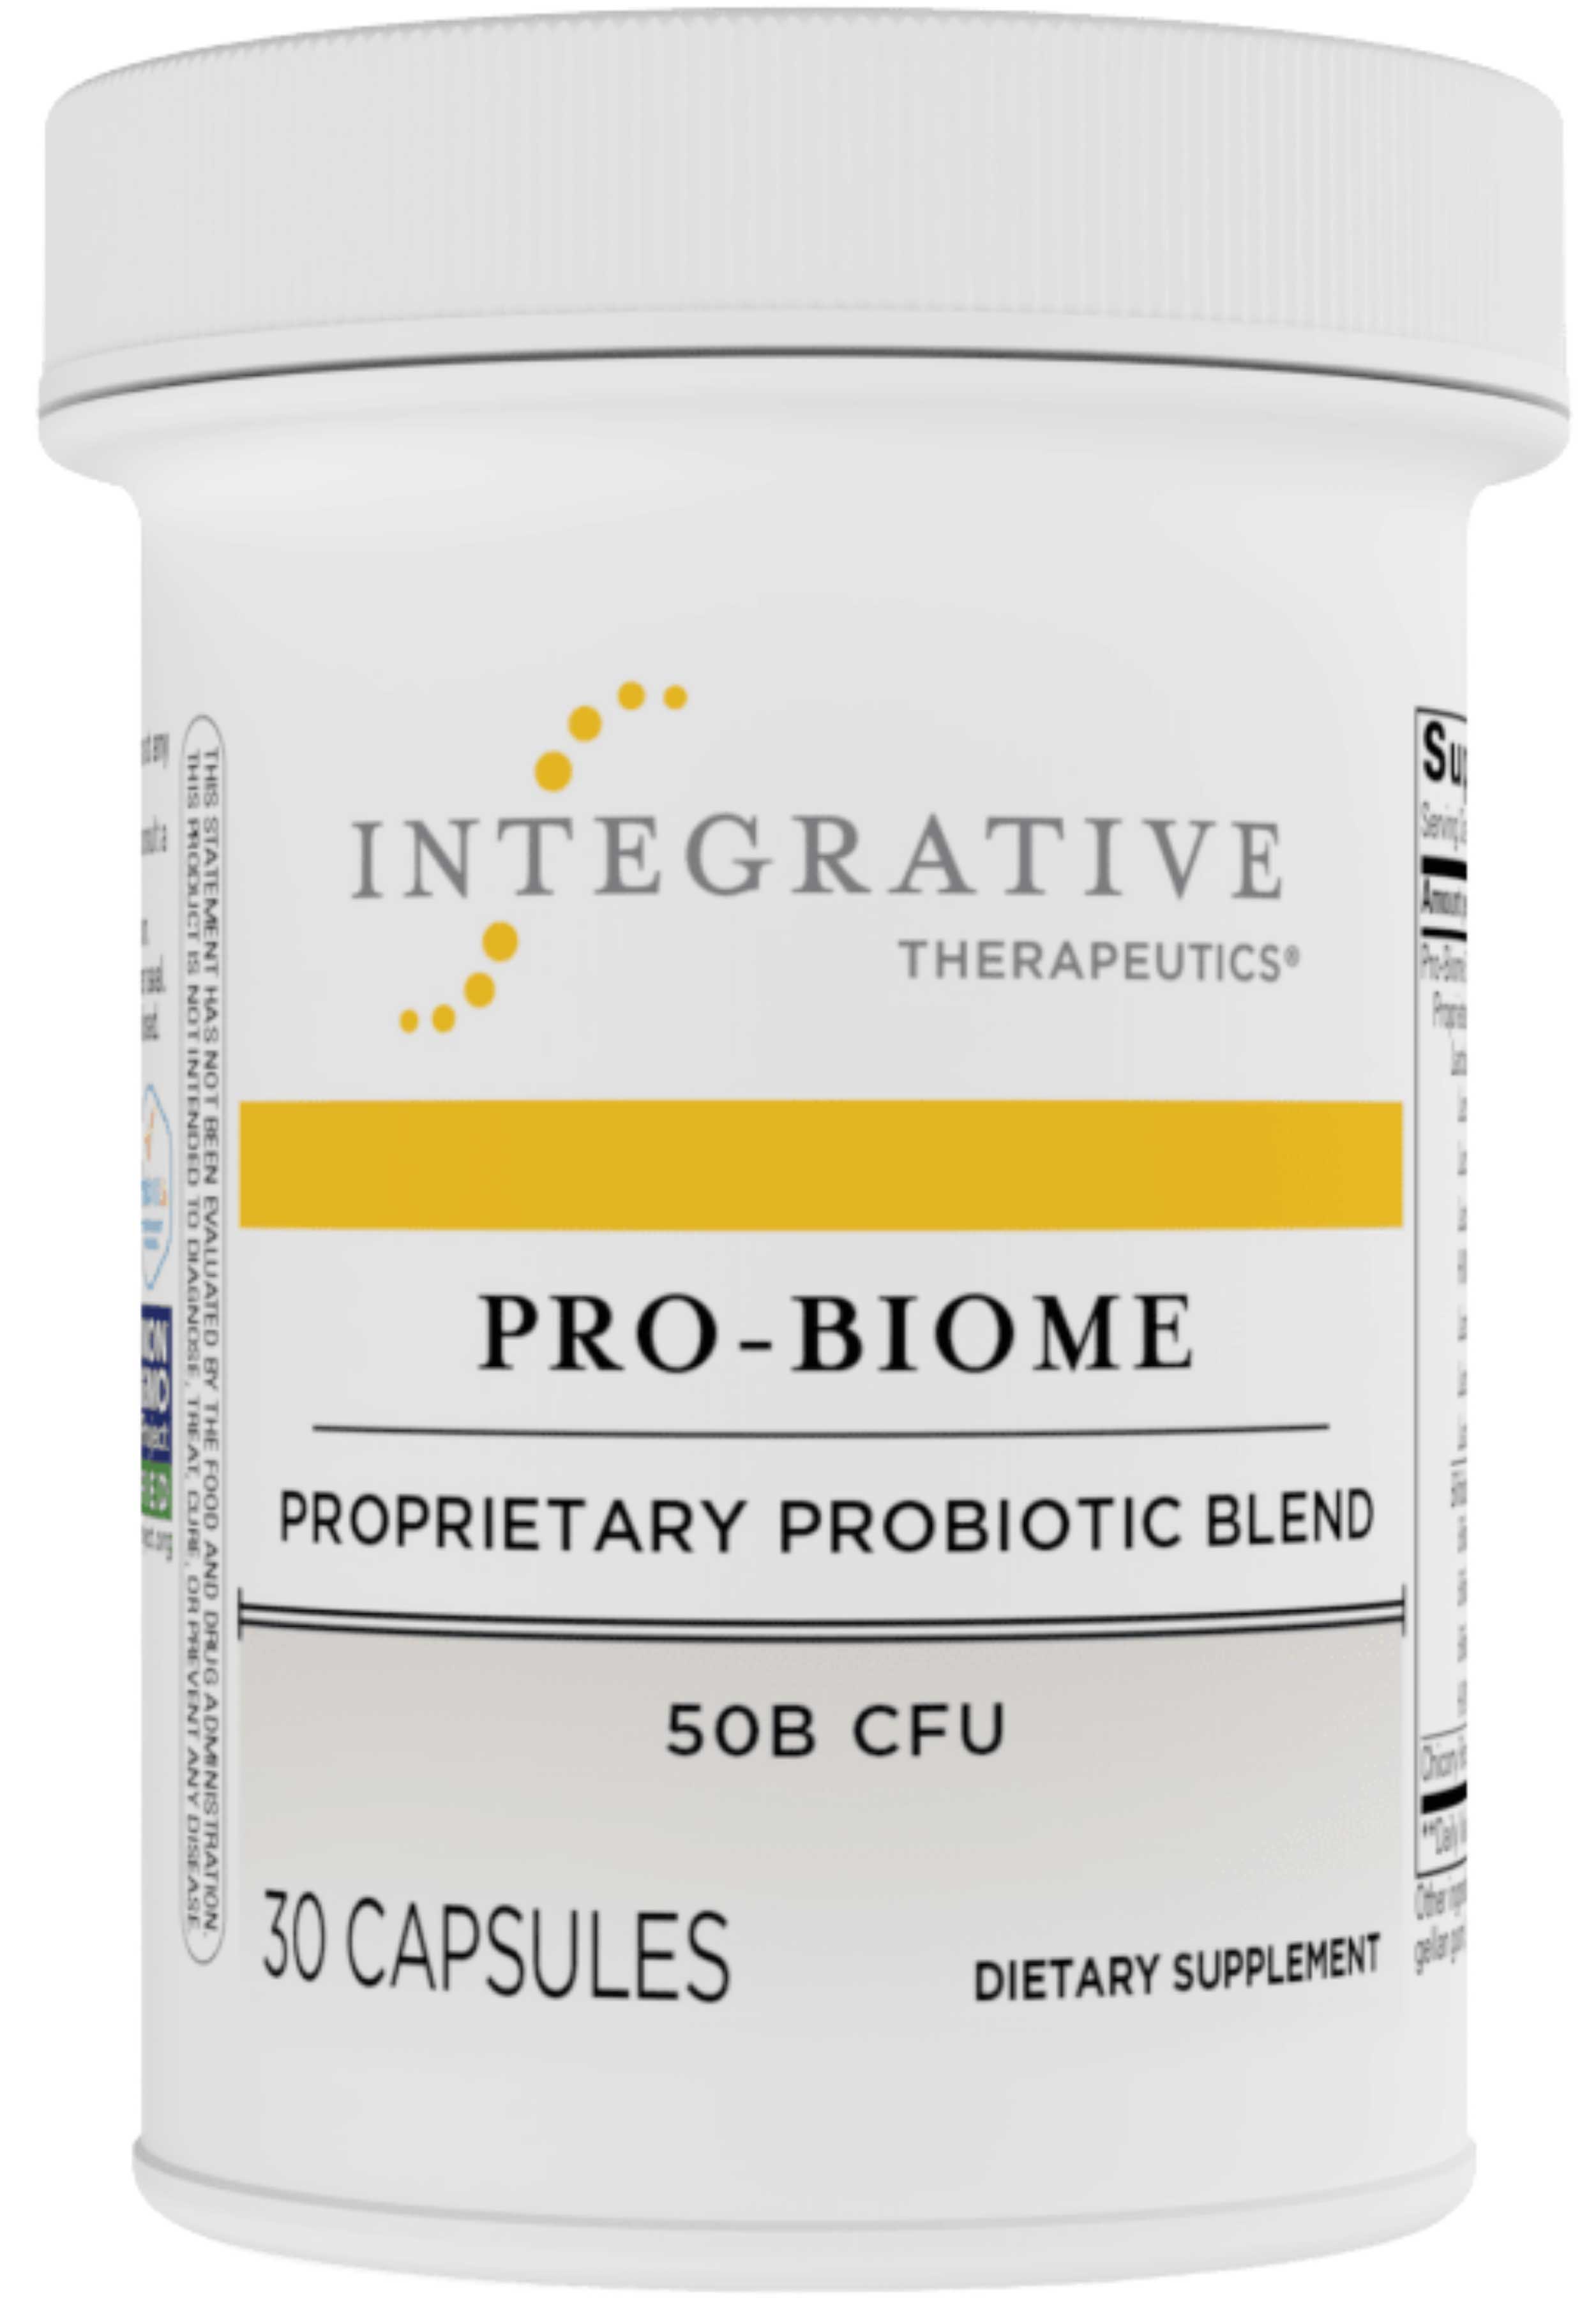 Integrative Therapeutics Pro-Biome